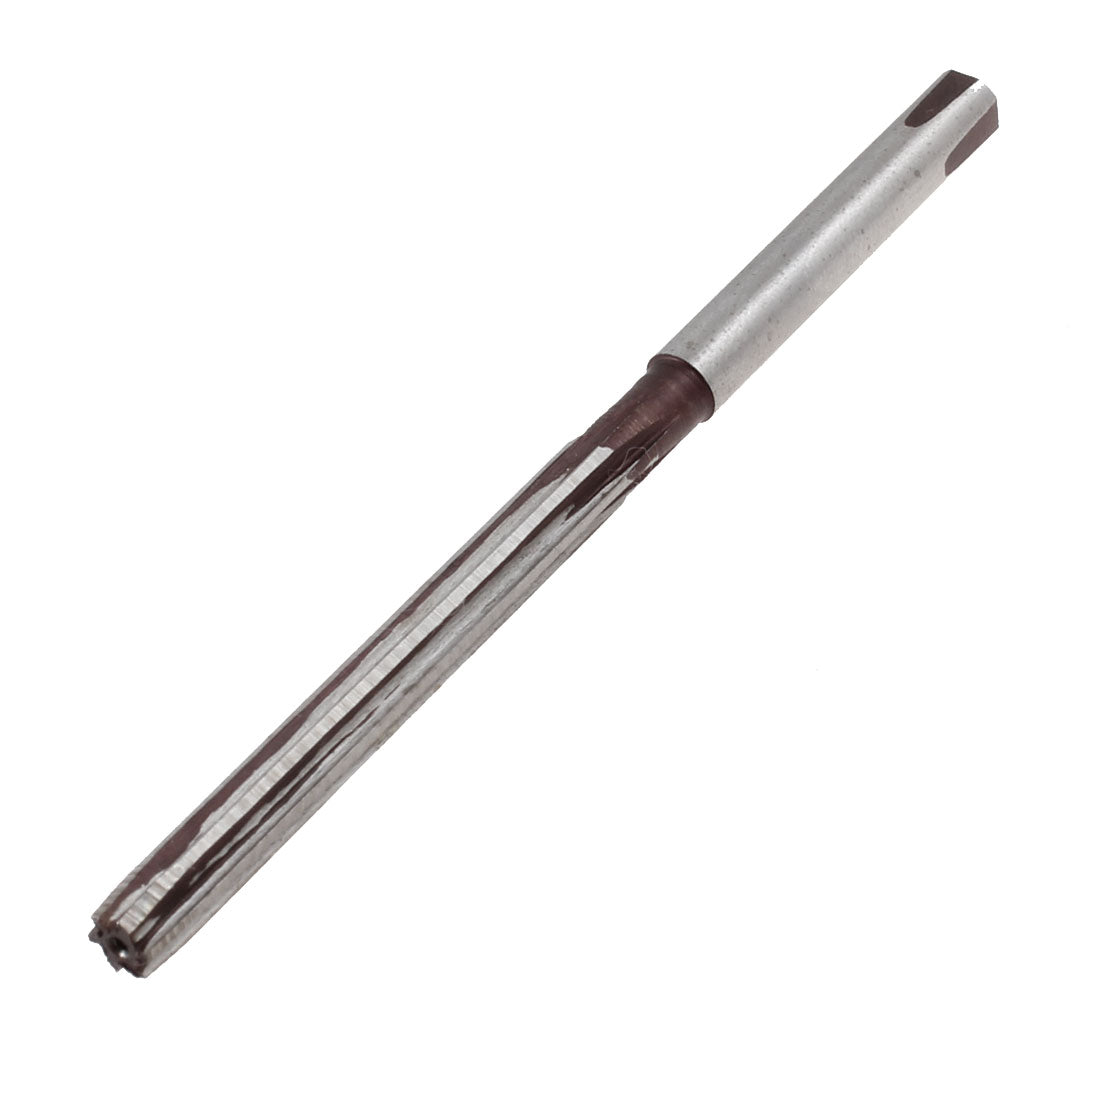 uxcell Uxcell 5mm 1/5" Diameter 6 Flutes HSS Machine Reamer Milling Cutter